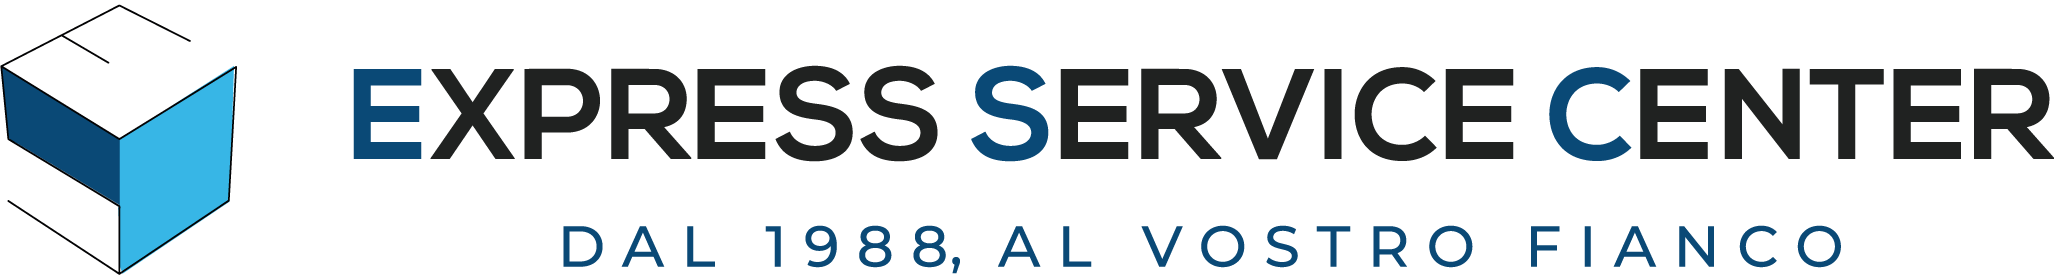 Express Service Center Logo